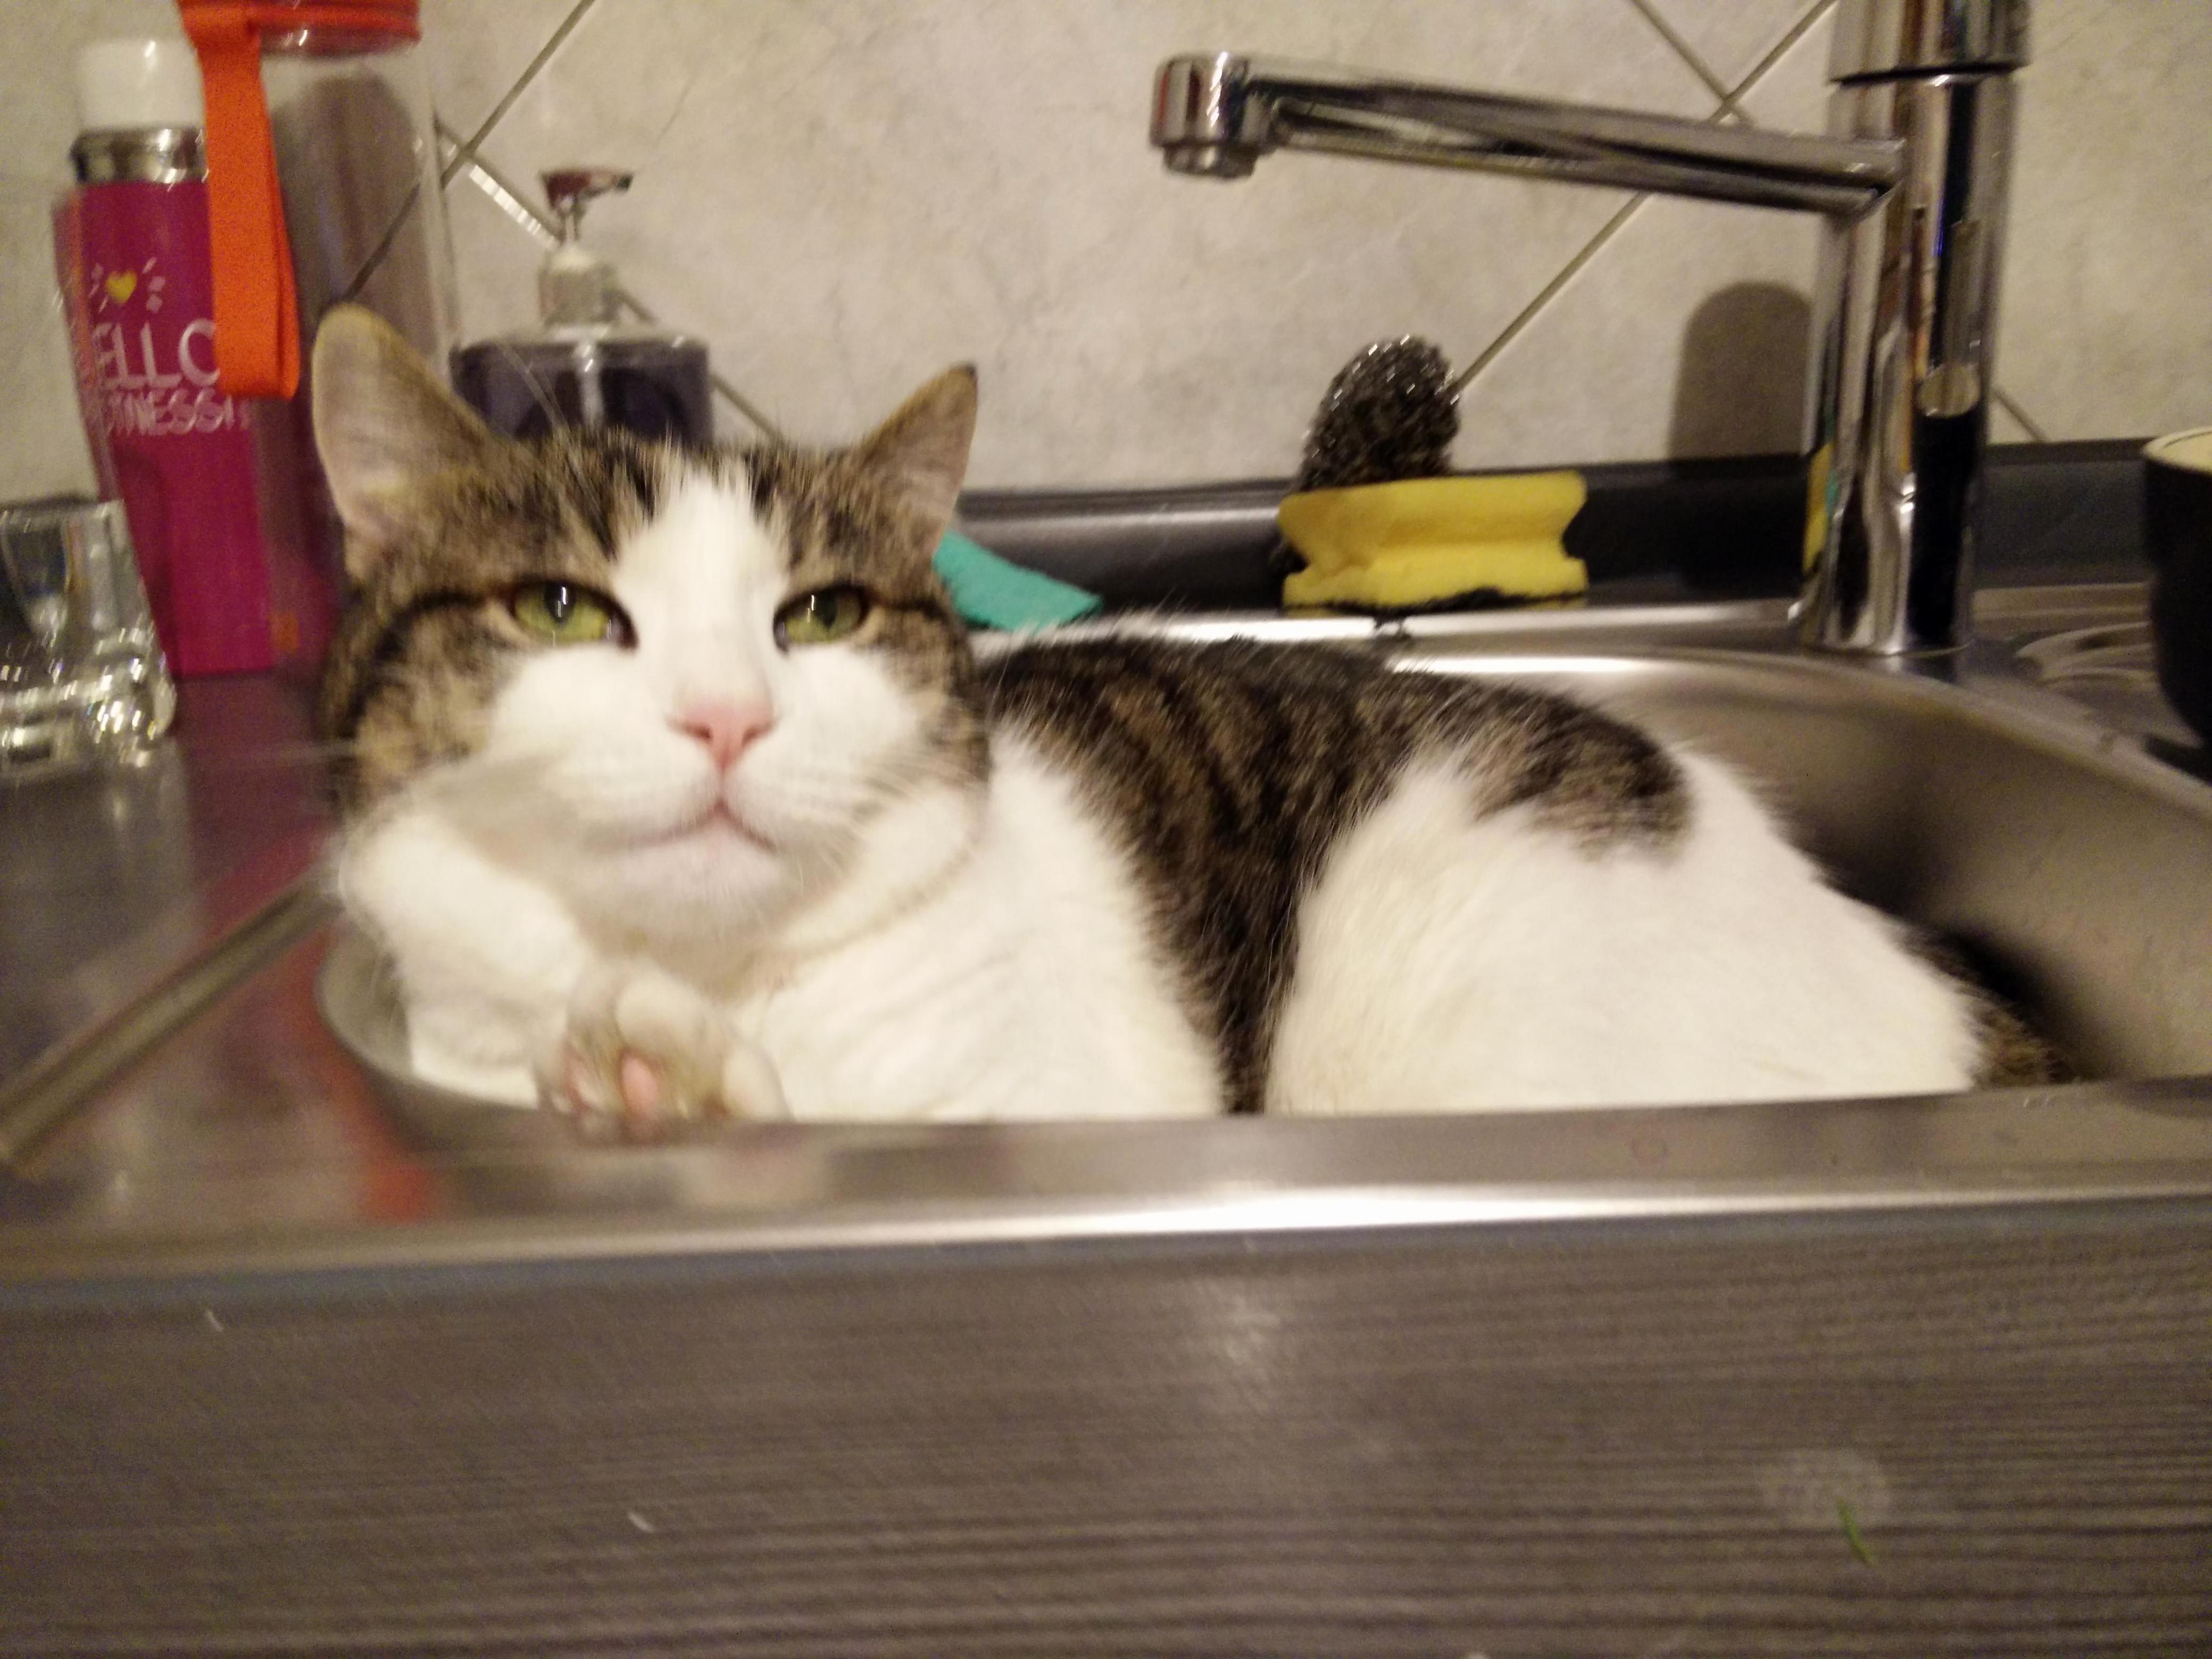 My cat in kitchen sink xd